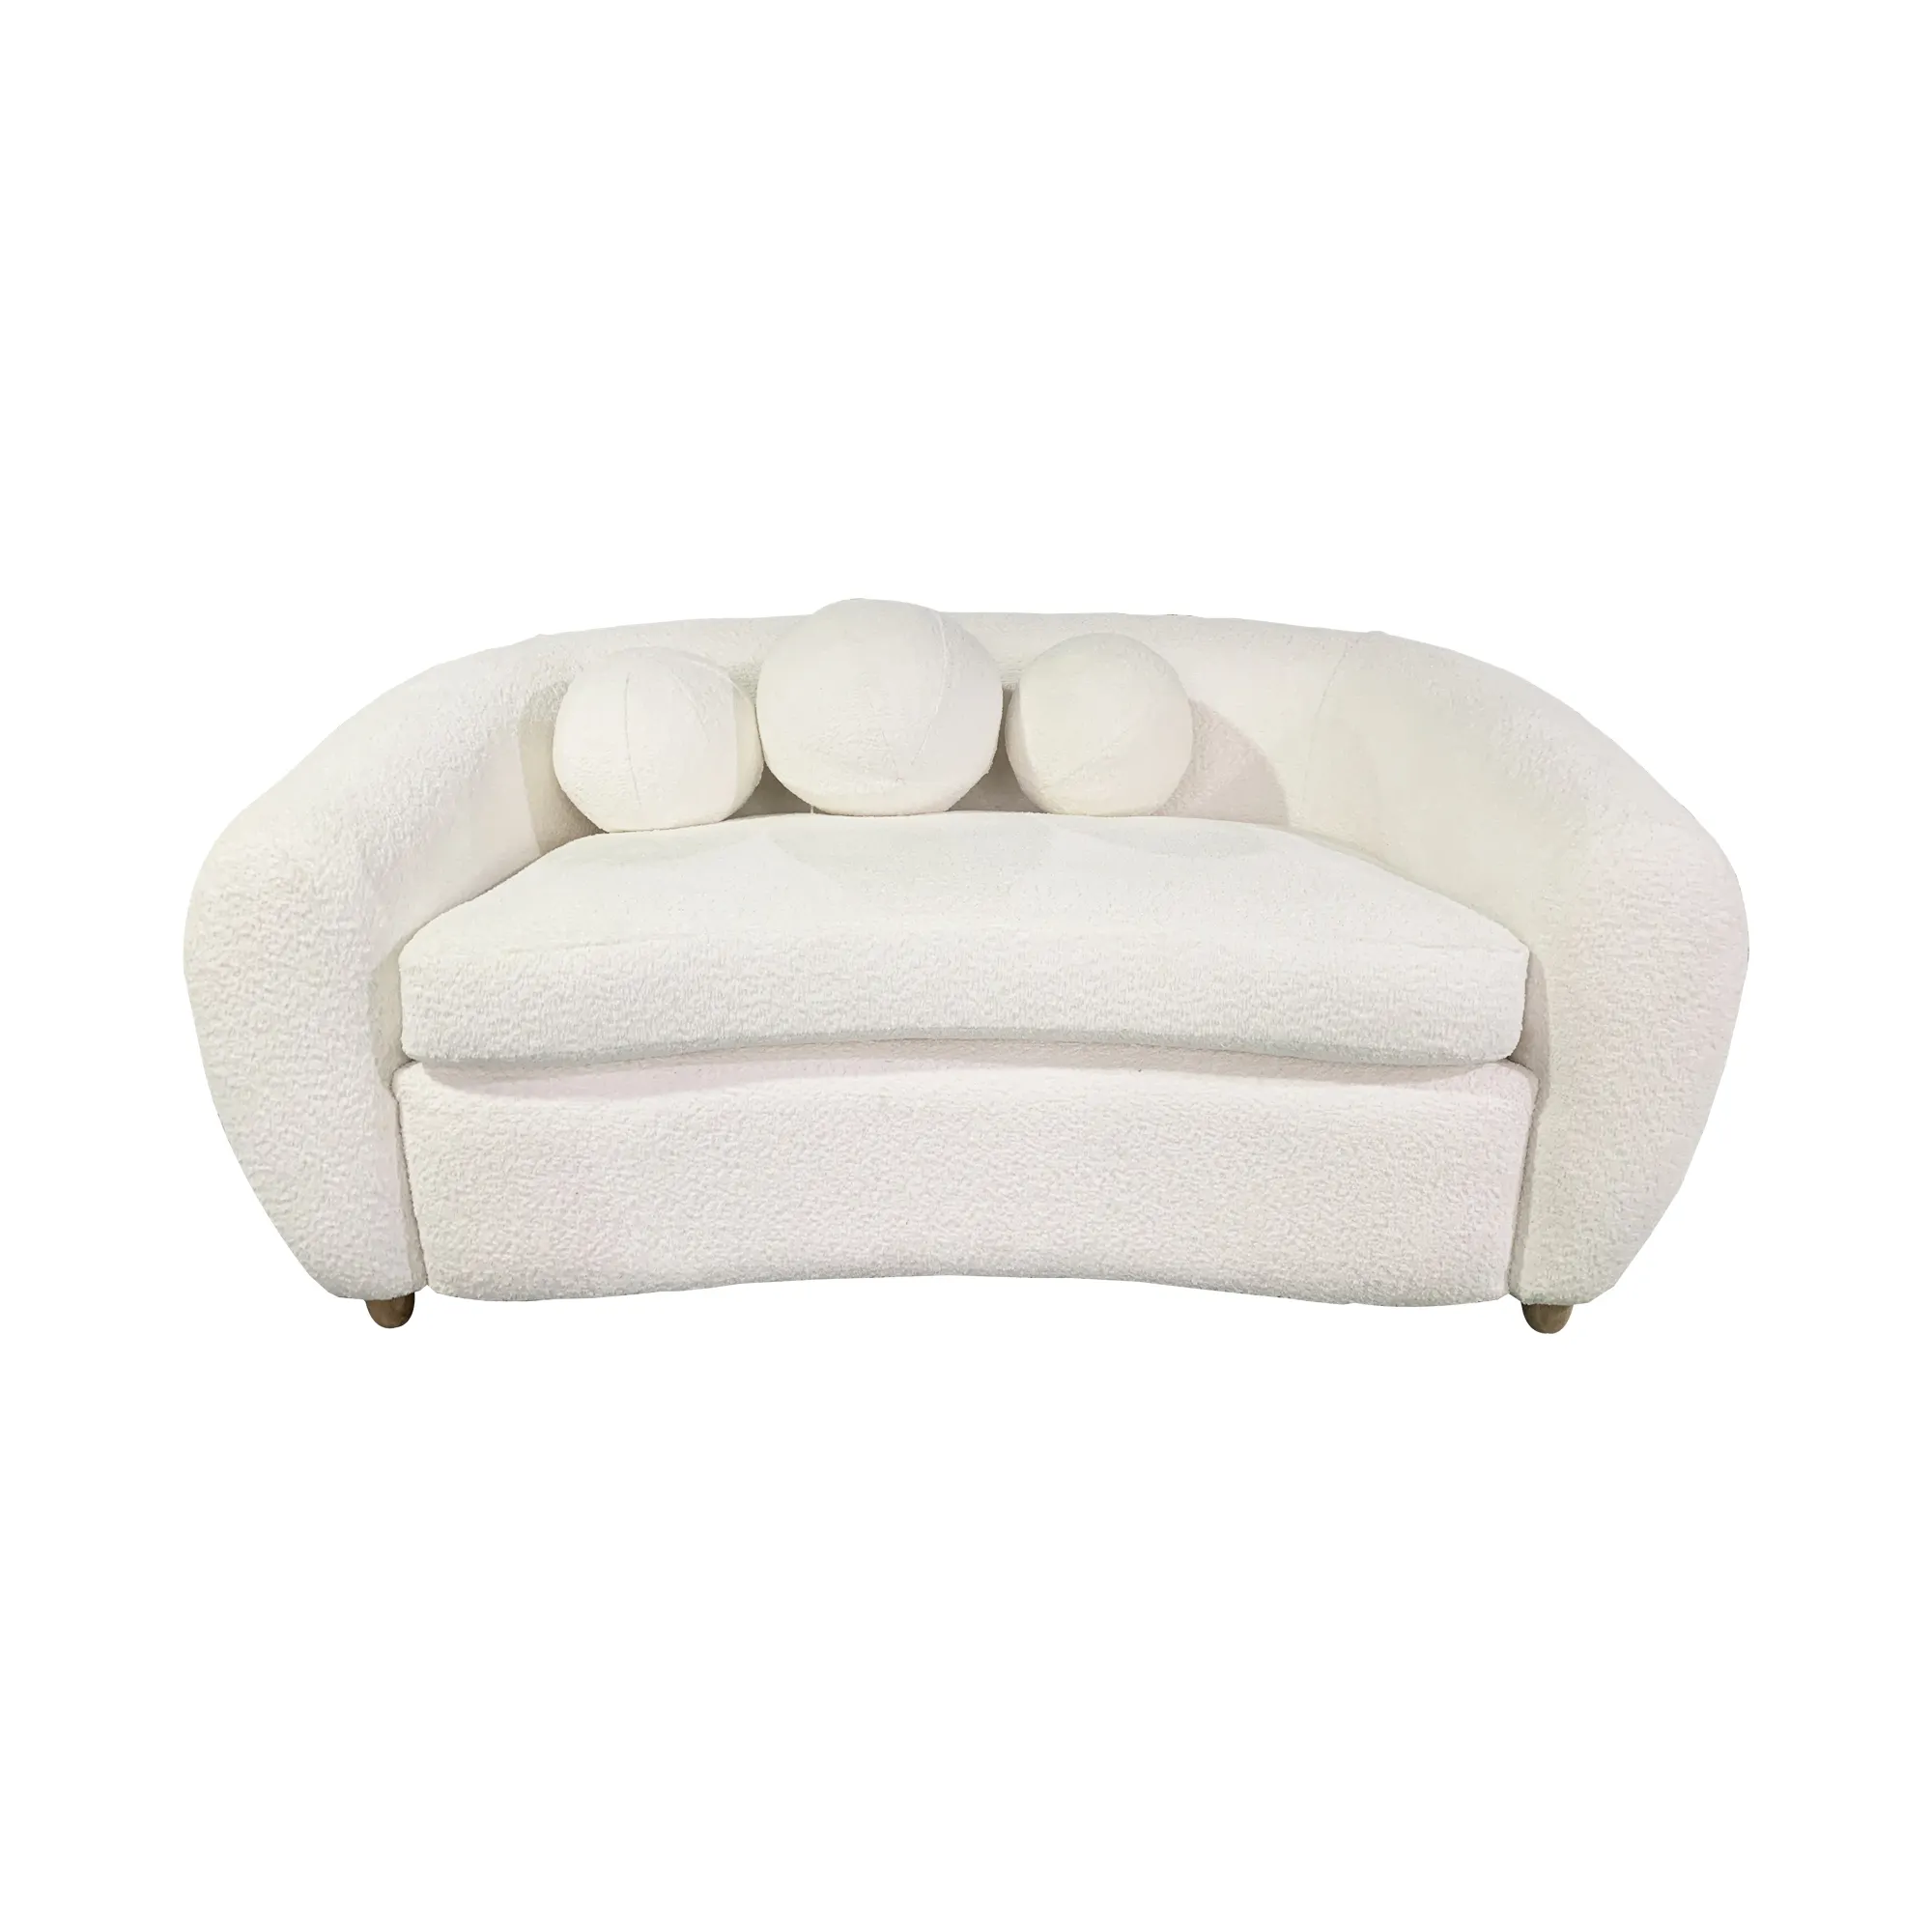 Mobili da soggiorno dal Design moderno contemporaneo Love Seat White 2 posti Home Leisure Lounge sofa